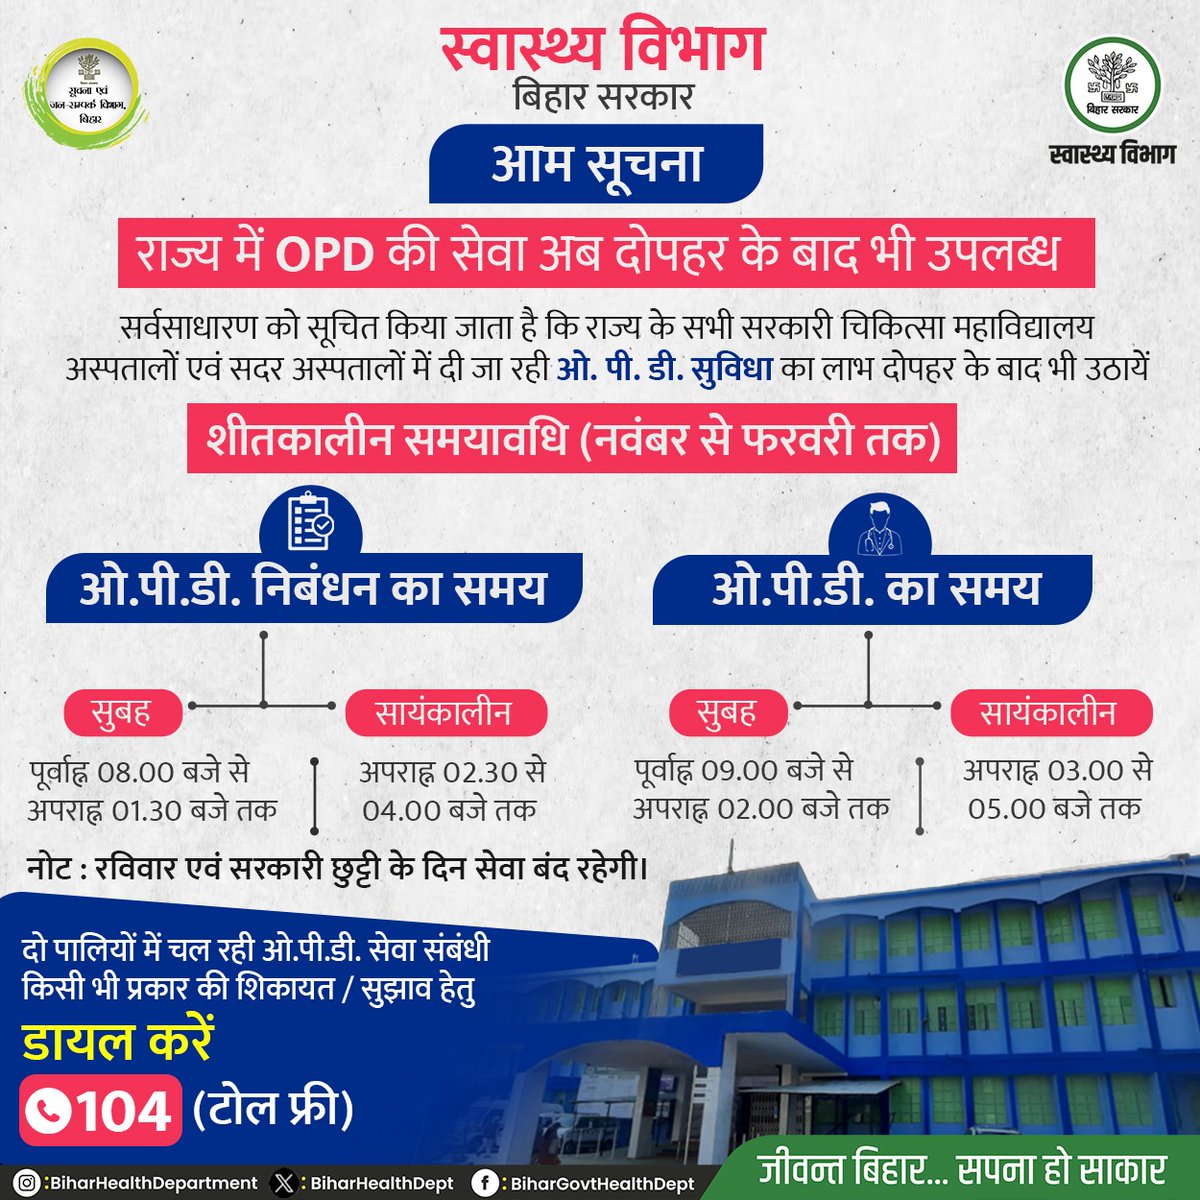 आम सूचना ! सर्वसाधारण को सूचित किया जाता है कि राज्य के सभी सरकारी चिकित्सा महाविद्यालय अस्पतालों एवं सदर अस्पतालों में मरीजों को दी जाने वाली ओ.पी.डी की सुविधा का समय निम्नलिखित हैं। @yadavtejashwi @IPRD_Bihar @SHSBihar #BiharHealthDept